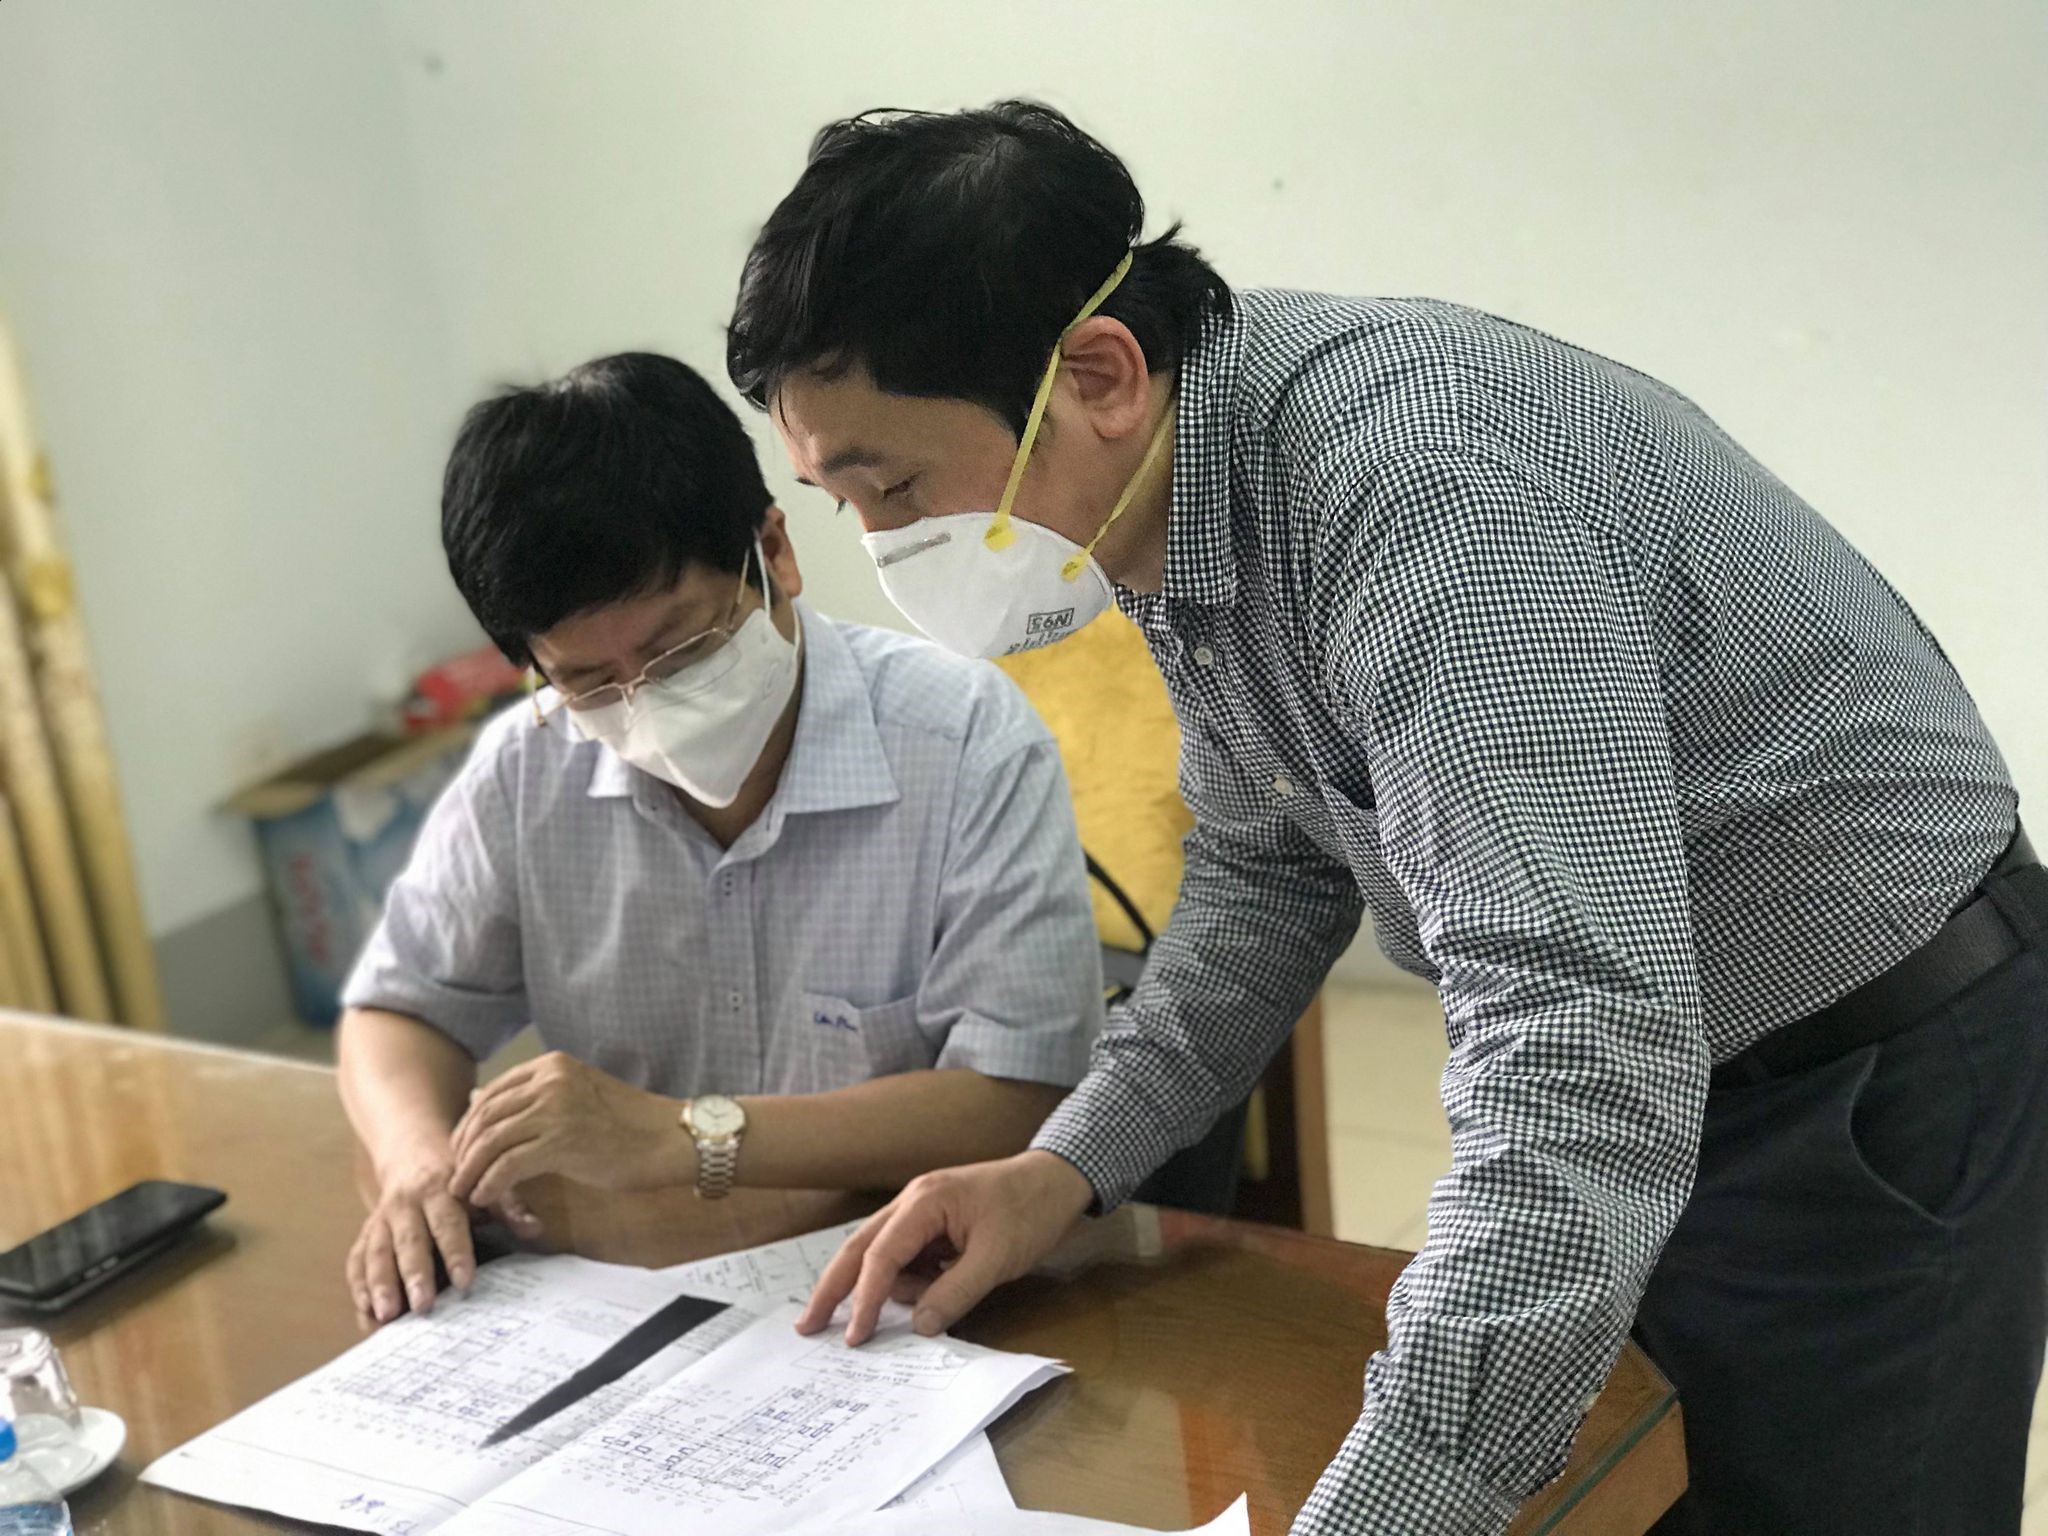 Bộ Y tế nhanh chóng lên phương án điều trị, đáp ứng tình hình dịch bệnh tại Bắc Giang - Ảnh 2.